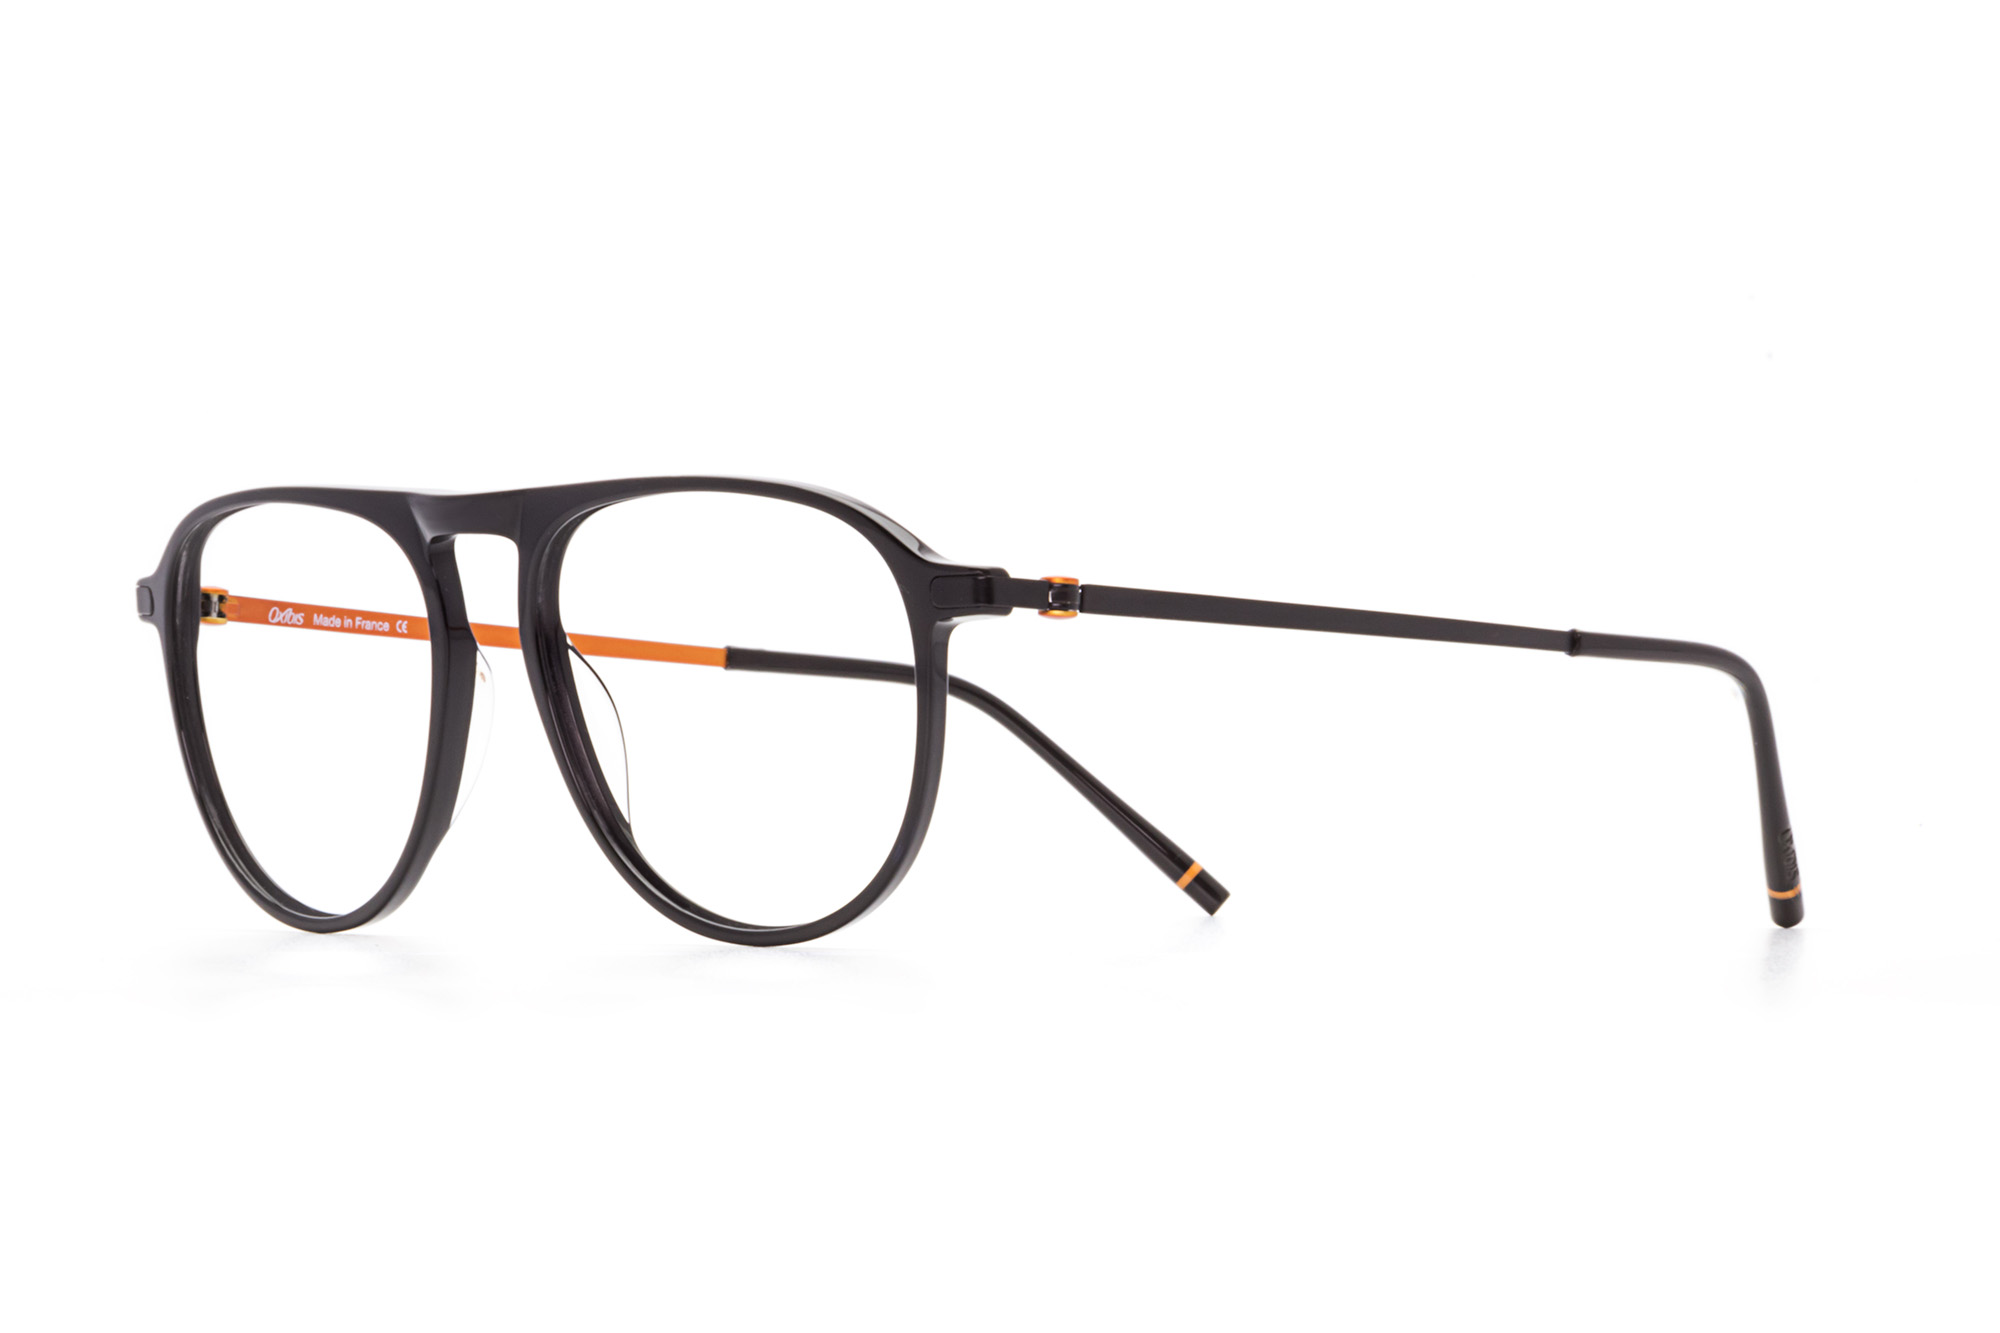 Oxibis Loop 10 LO10C1 53 orta ekartman siyah ve turuncu renkli damla model numaralı erkek optik gözlük çerçevesi